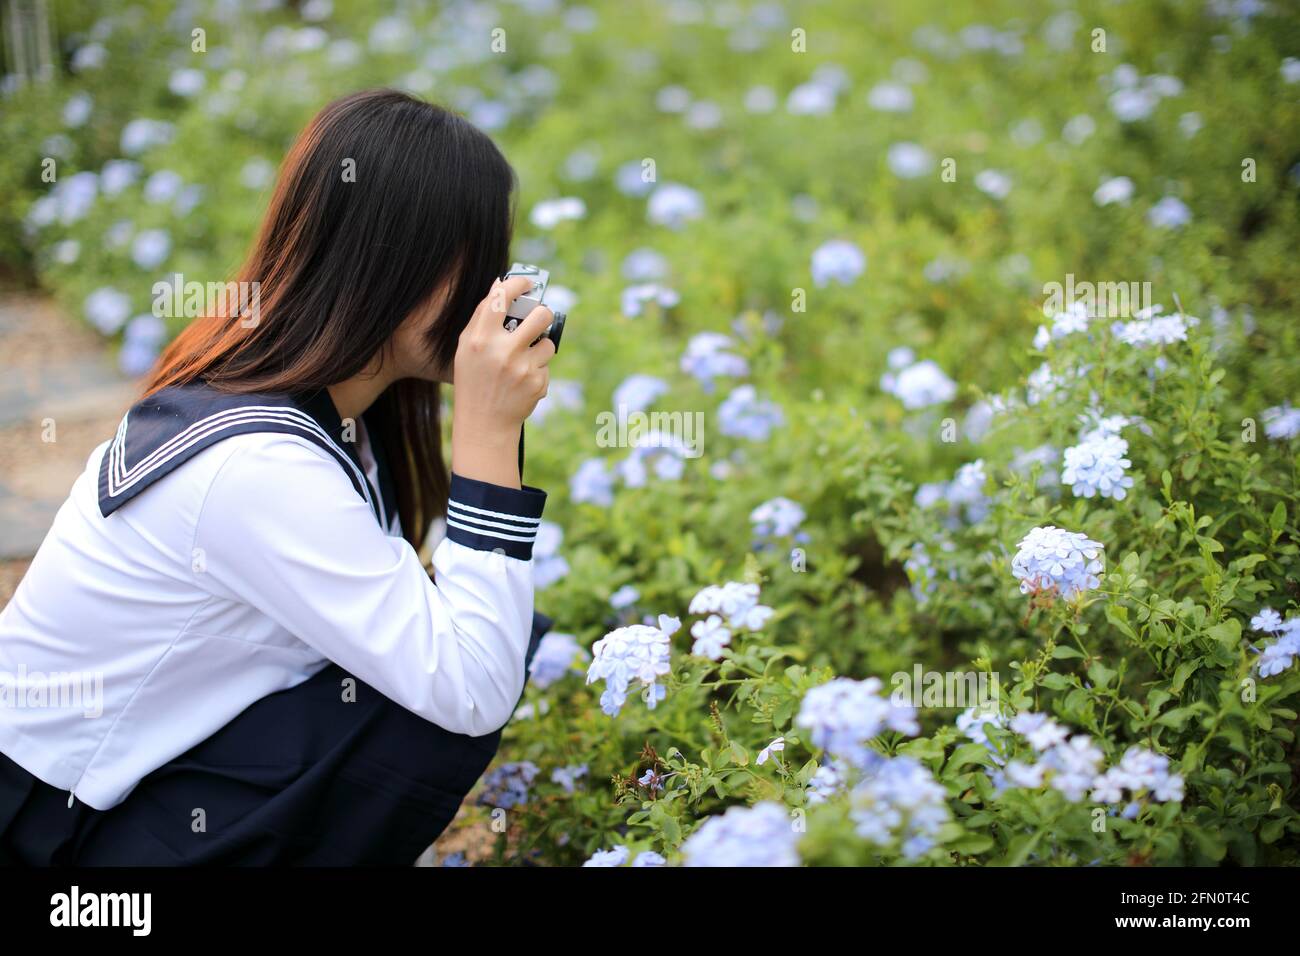 École asiatique fille avec l'appareil photo de prendre une photo de fleurs dedans jardin Banque D'Images